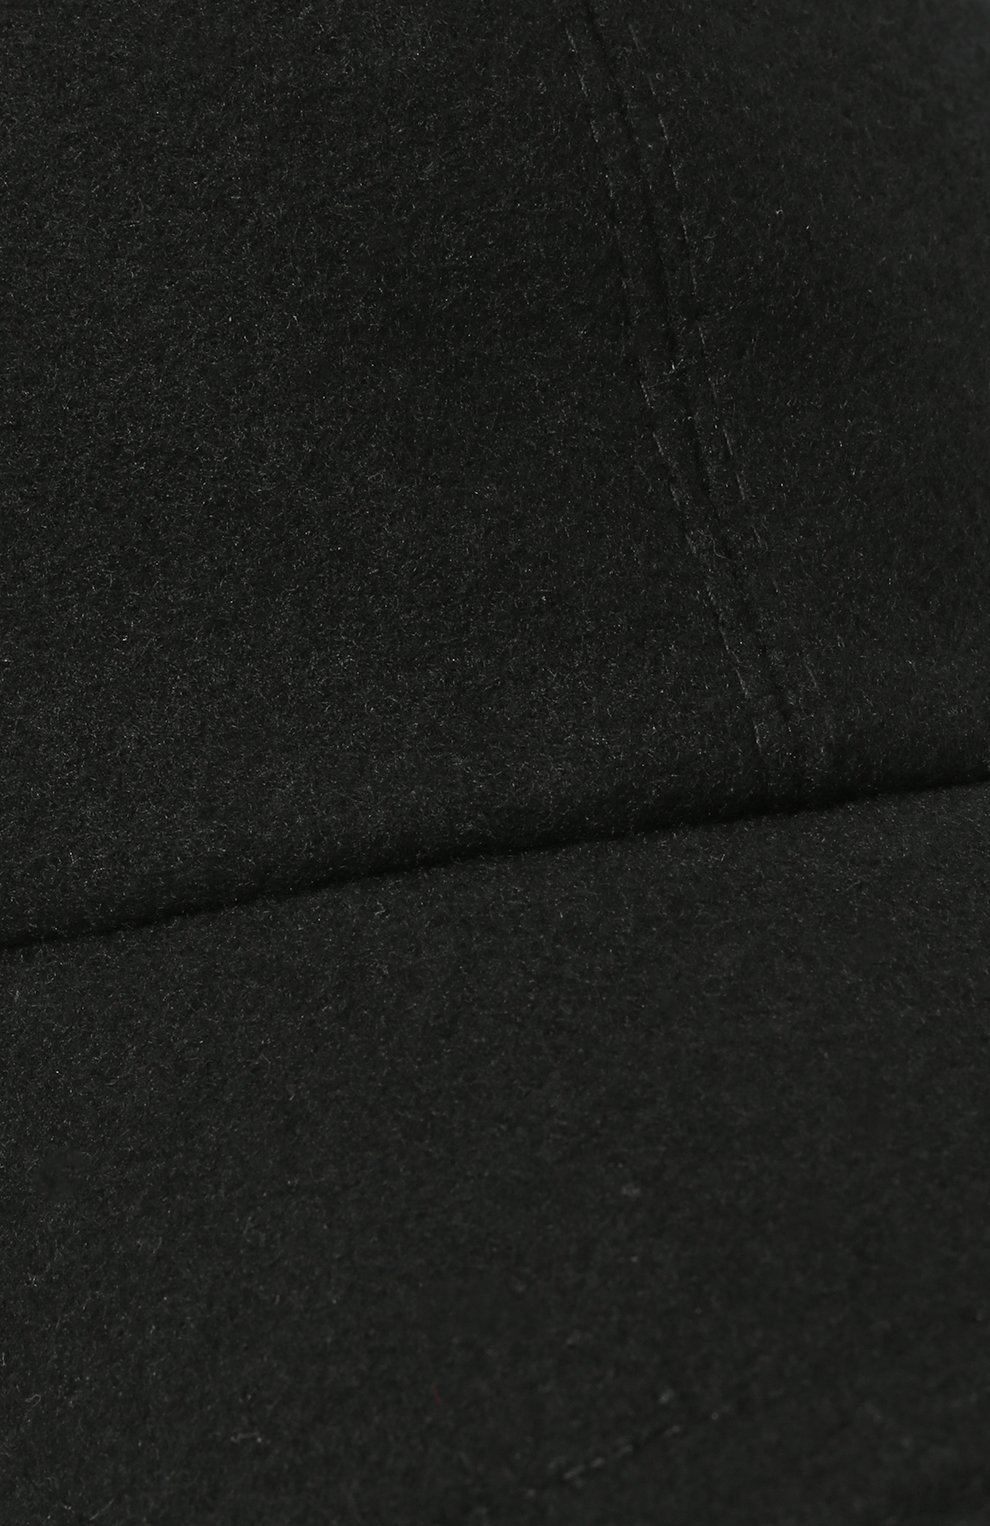 Мужской кашемировая бейсболка FEDELI черного цвета, арт. 5UI00801 | Фото 4 (Материал: Текстиль, Кашемир, Шерсть)